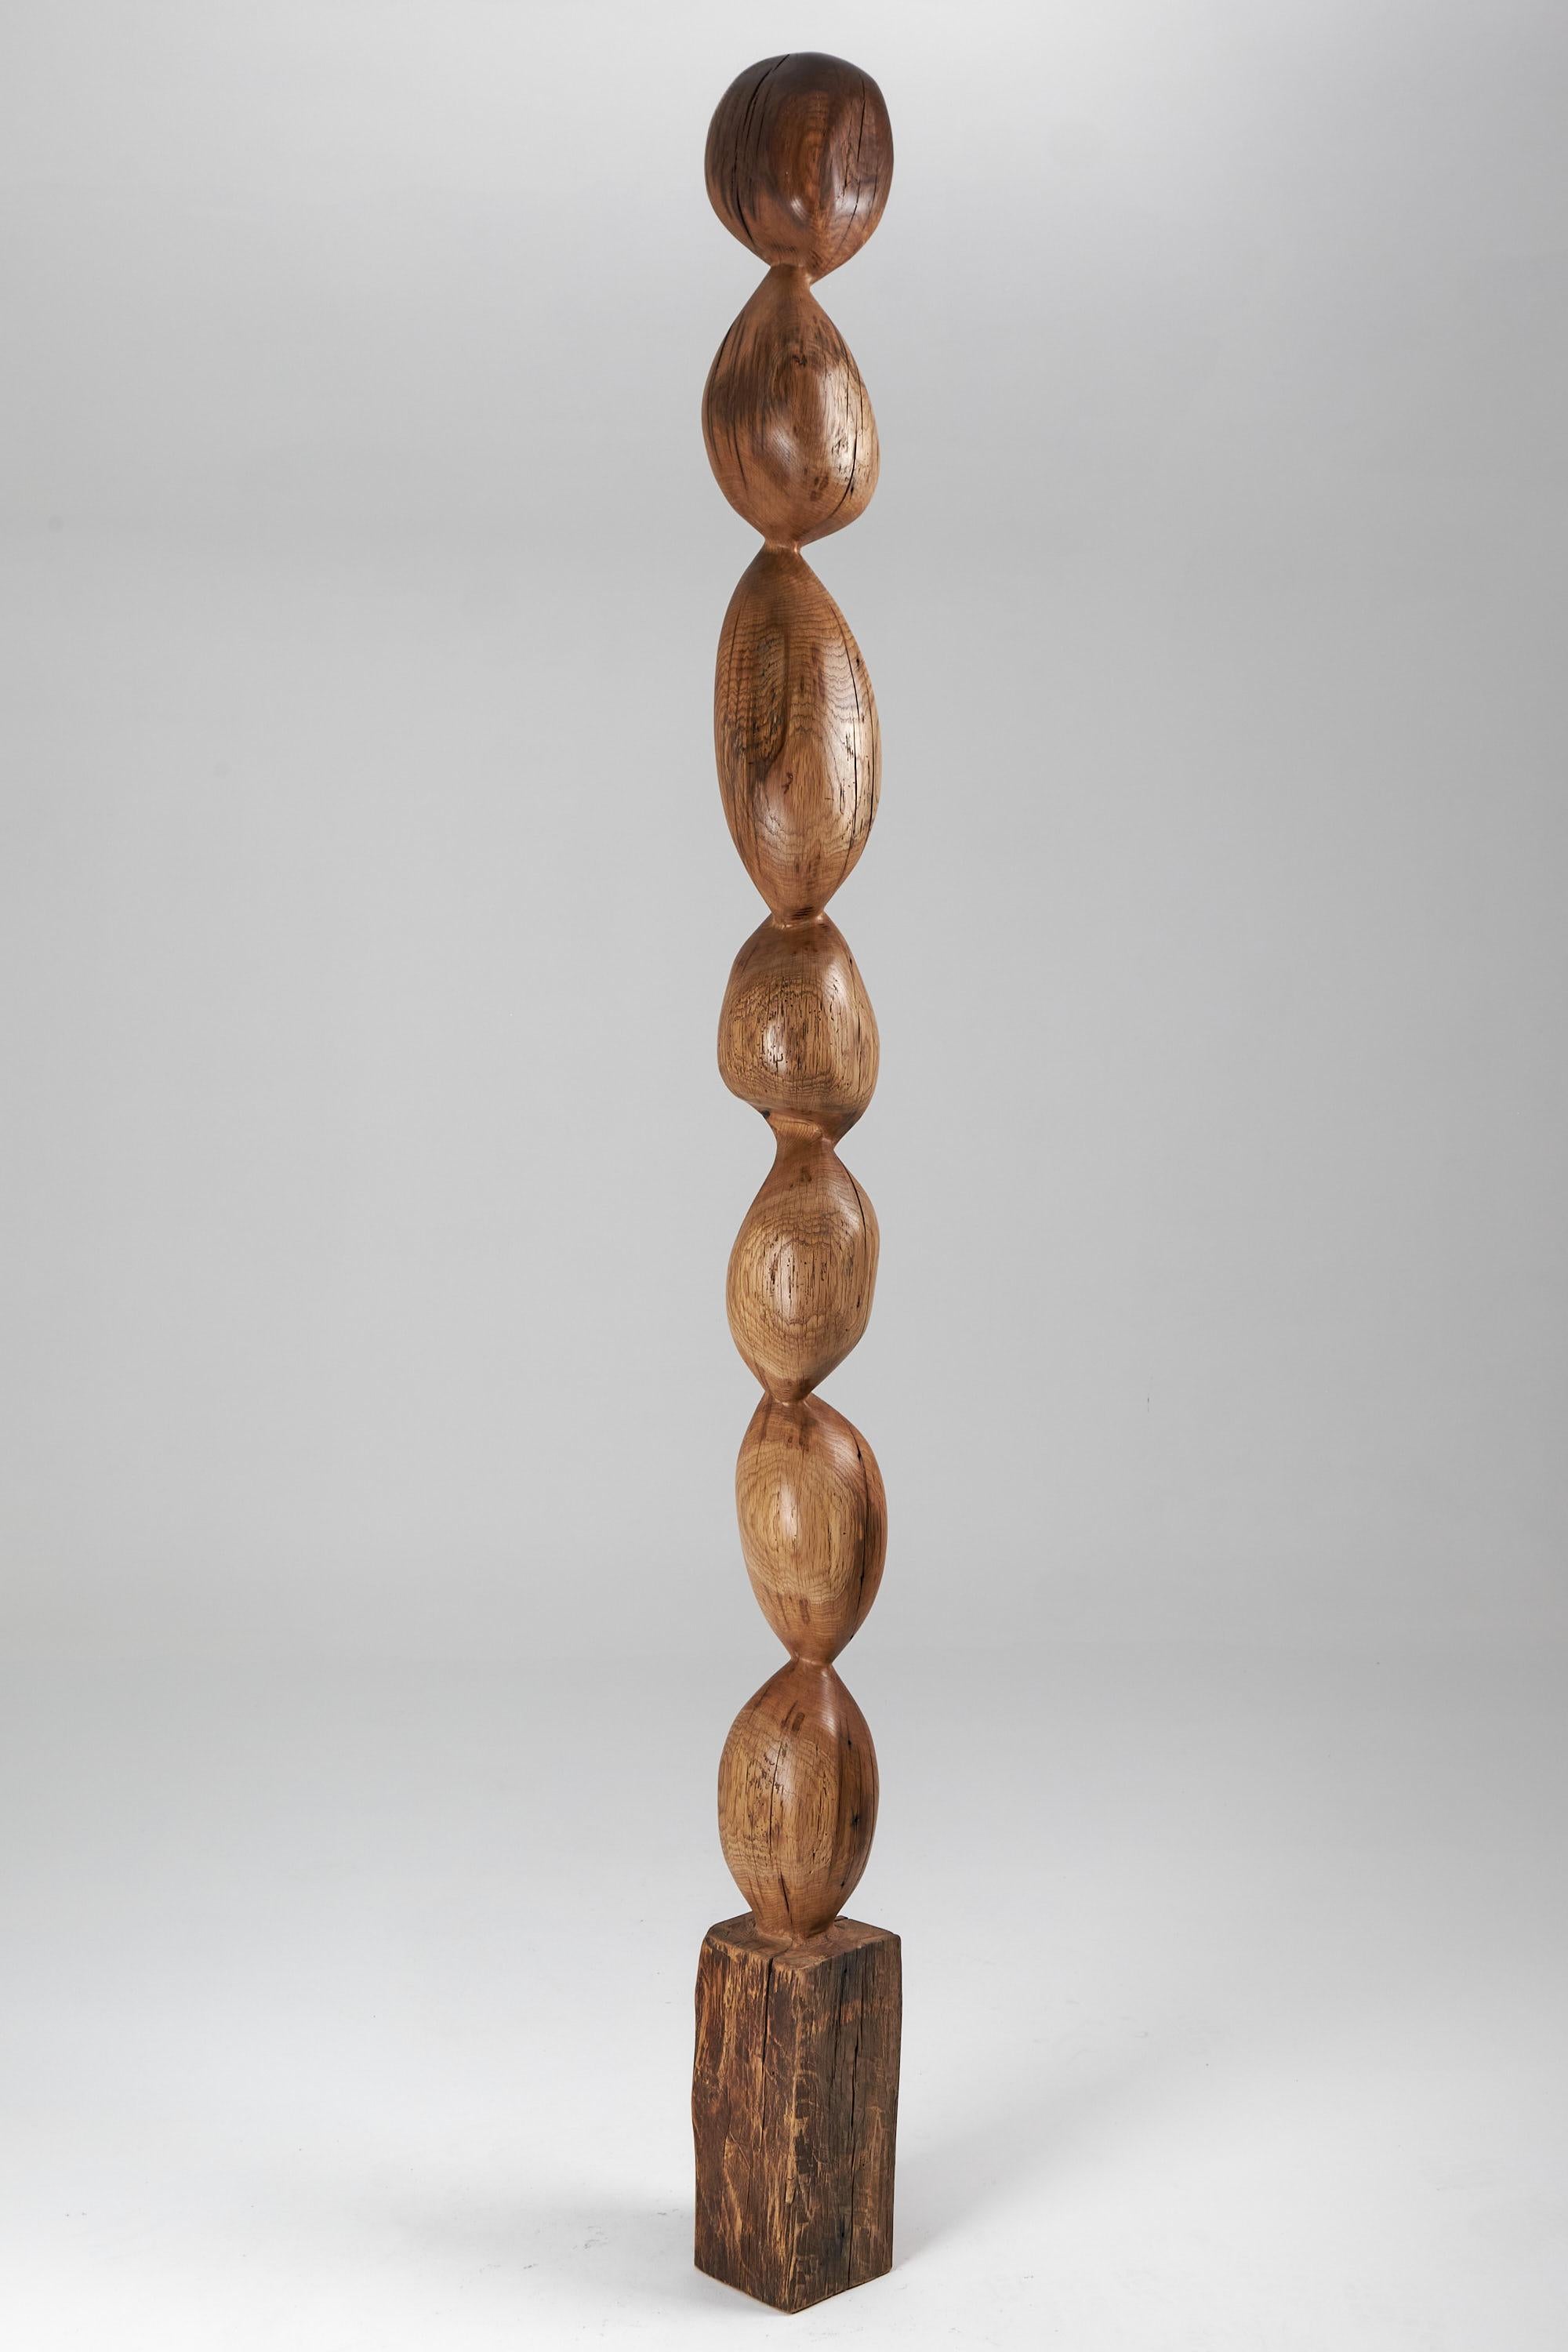 Chêne Still Stand Sculpture abstraite biomorphique en bois, sculptée à la tronçonneuse, XL en vente